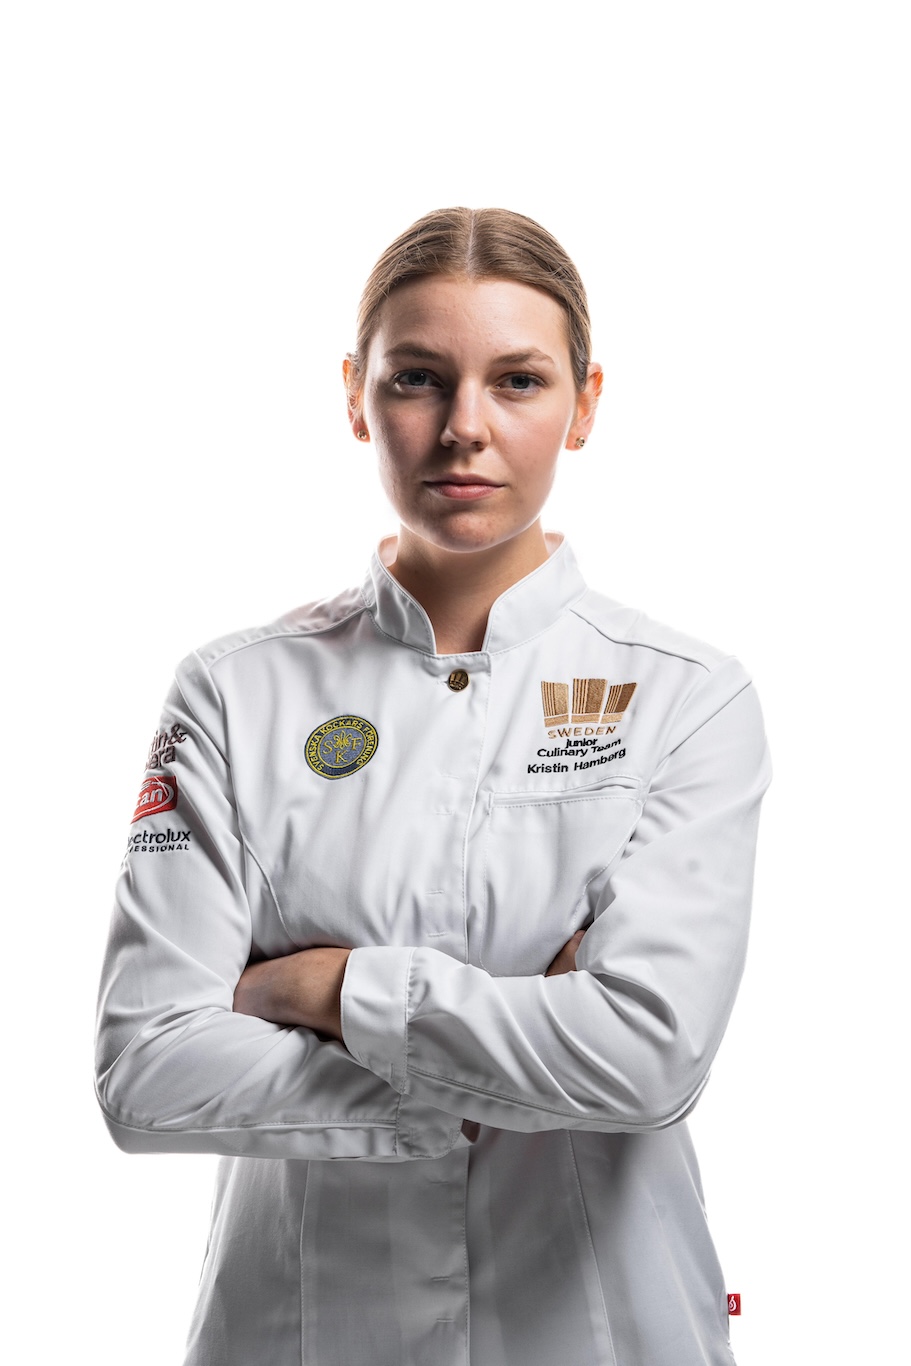 Kristin Hambergs reise fra amatørbaker til kulinarisk OL-gullvinner 2